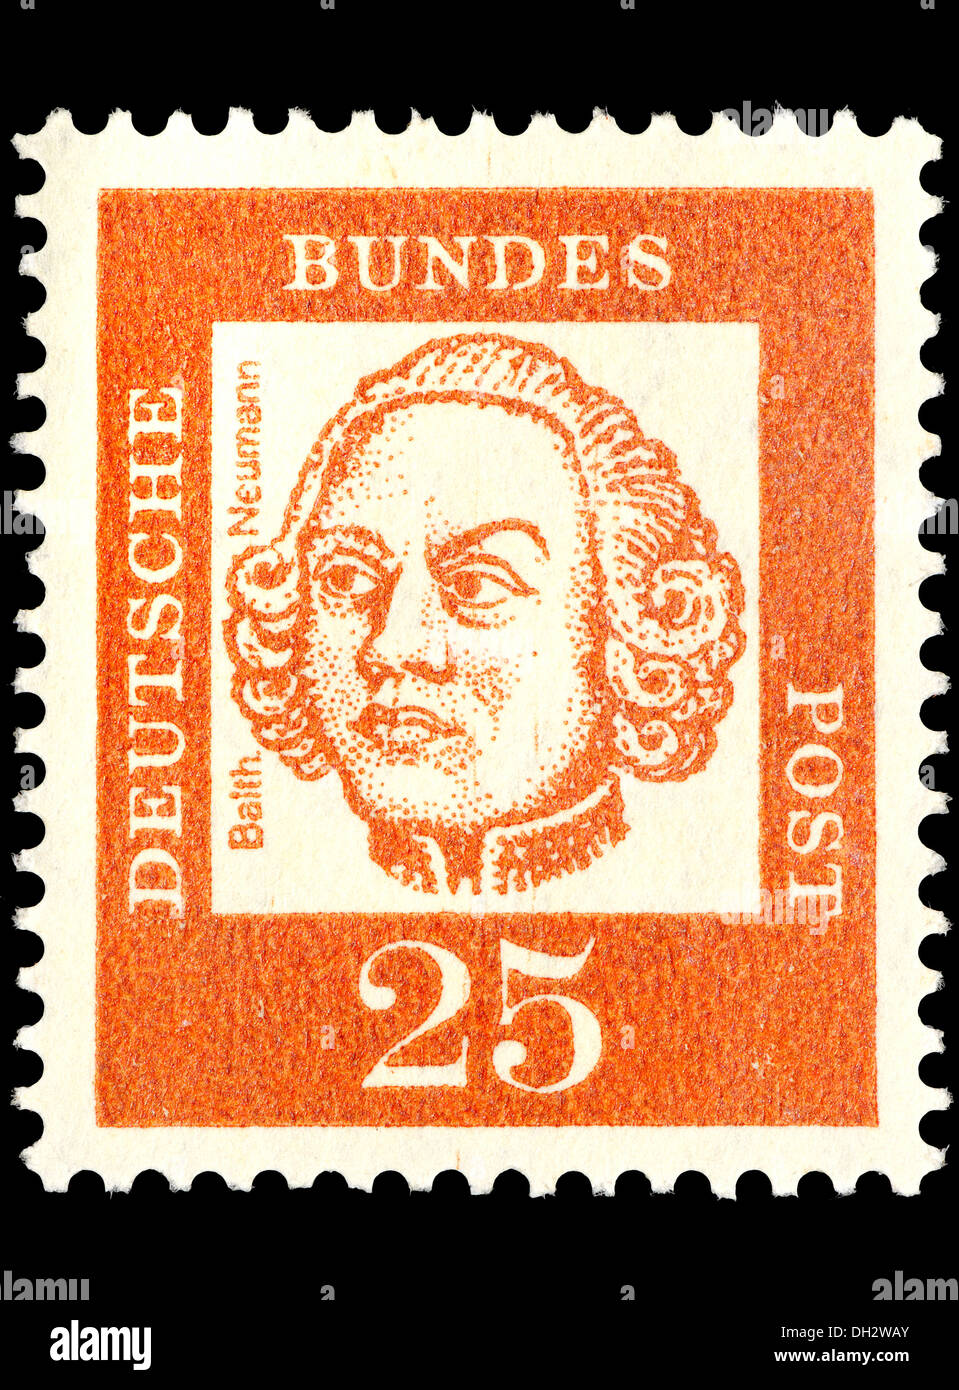 Portrait de Johann Balthasar Neumann (1687-1753) : architecte Baroque Allemand sur timbre Allemand Banque D'Images